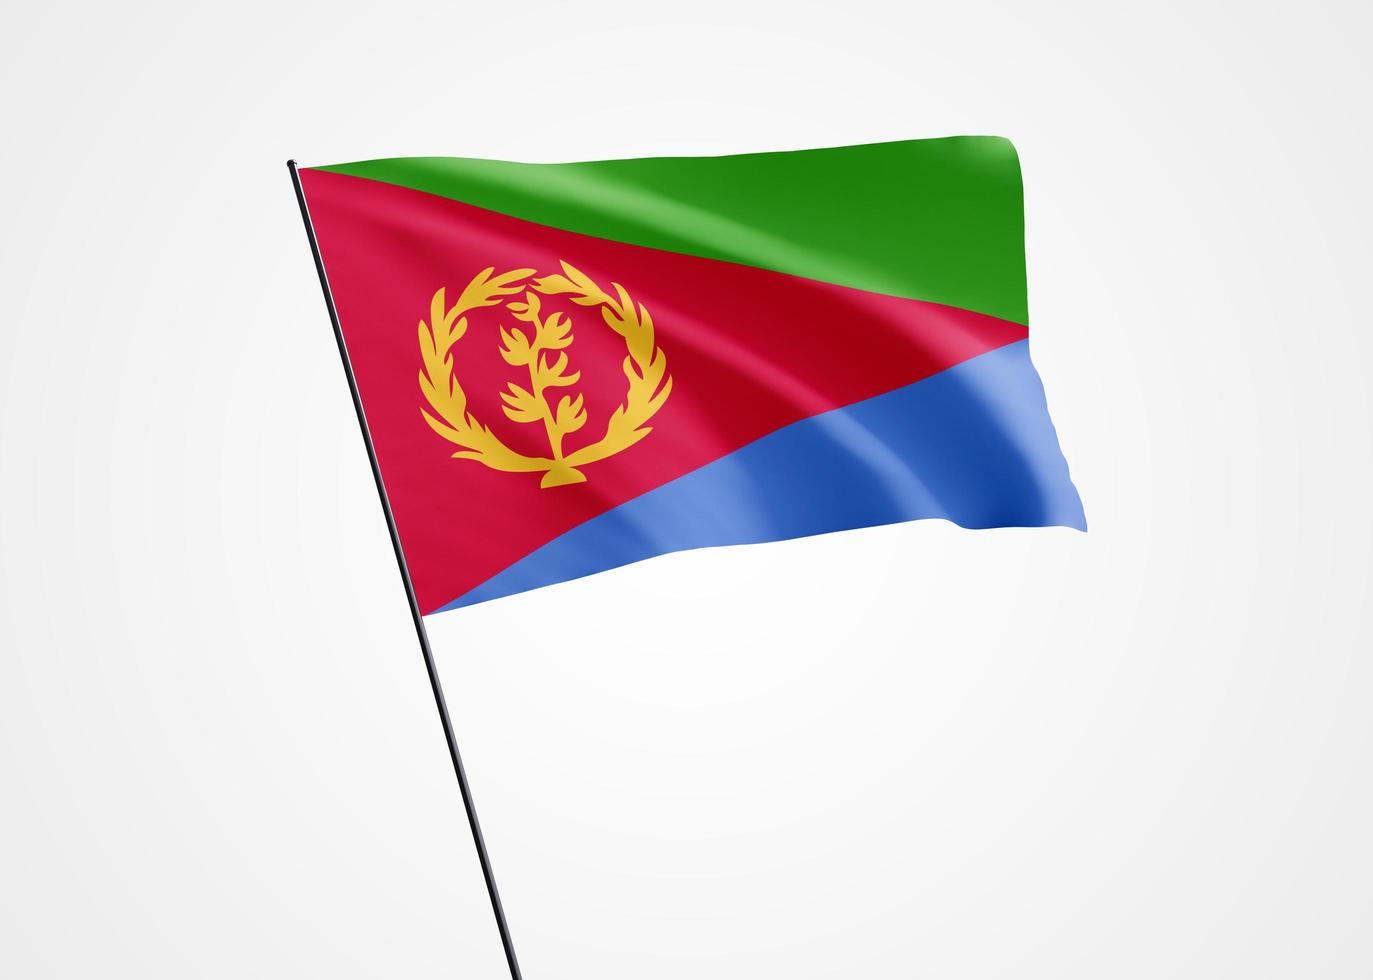 eritreas flagga vajar högt i den vita isolerade bakgrunden. 24 maj eritreas självständighetsdag världens nationella flaggsamling världens nationella flaggsamling foto